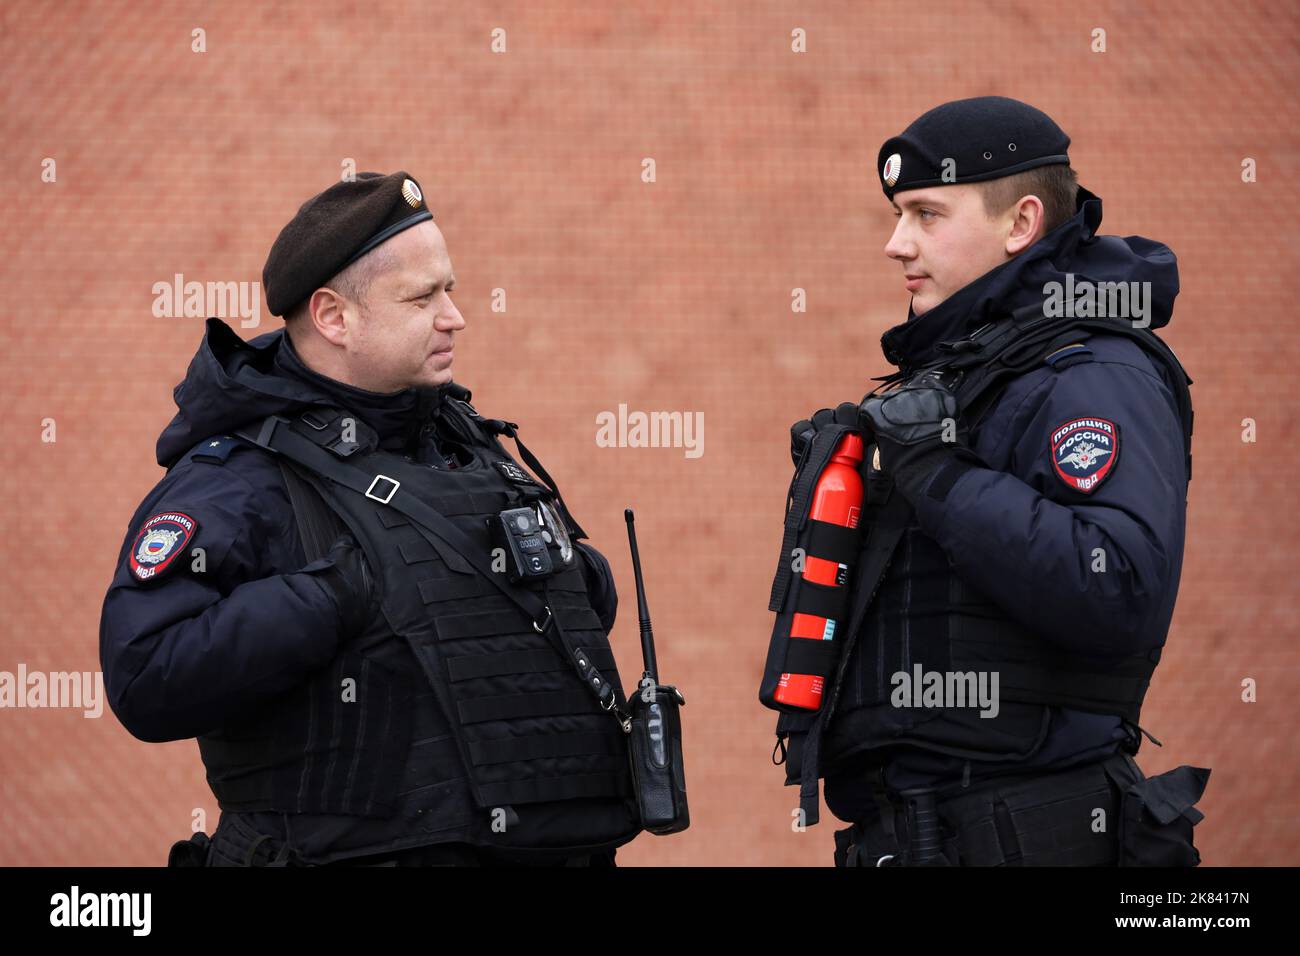 Deux policiers russes des forces spéciales en gilets pare-balles se tenant dans la rue de la ville Banque D'Images